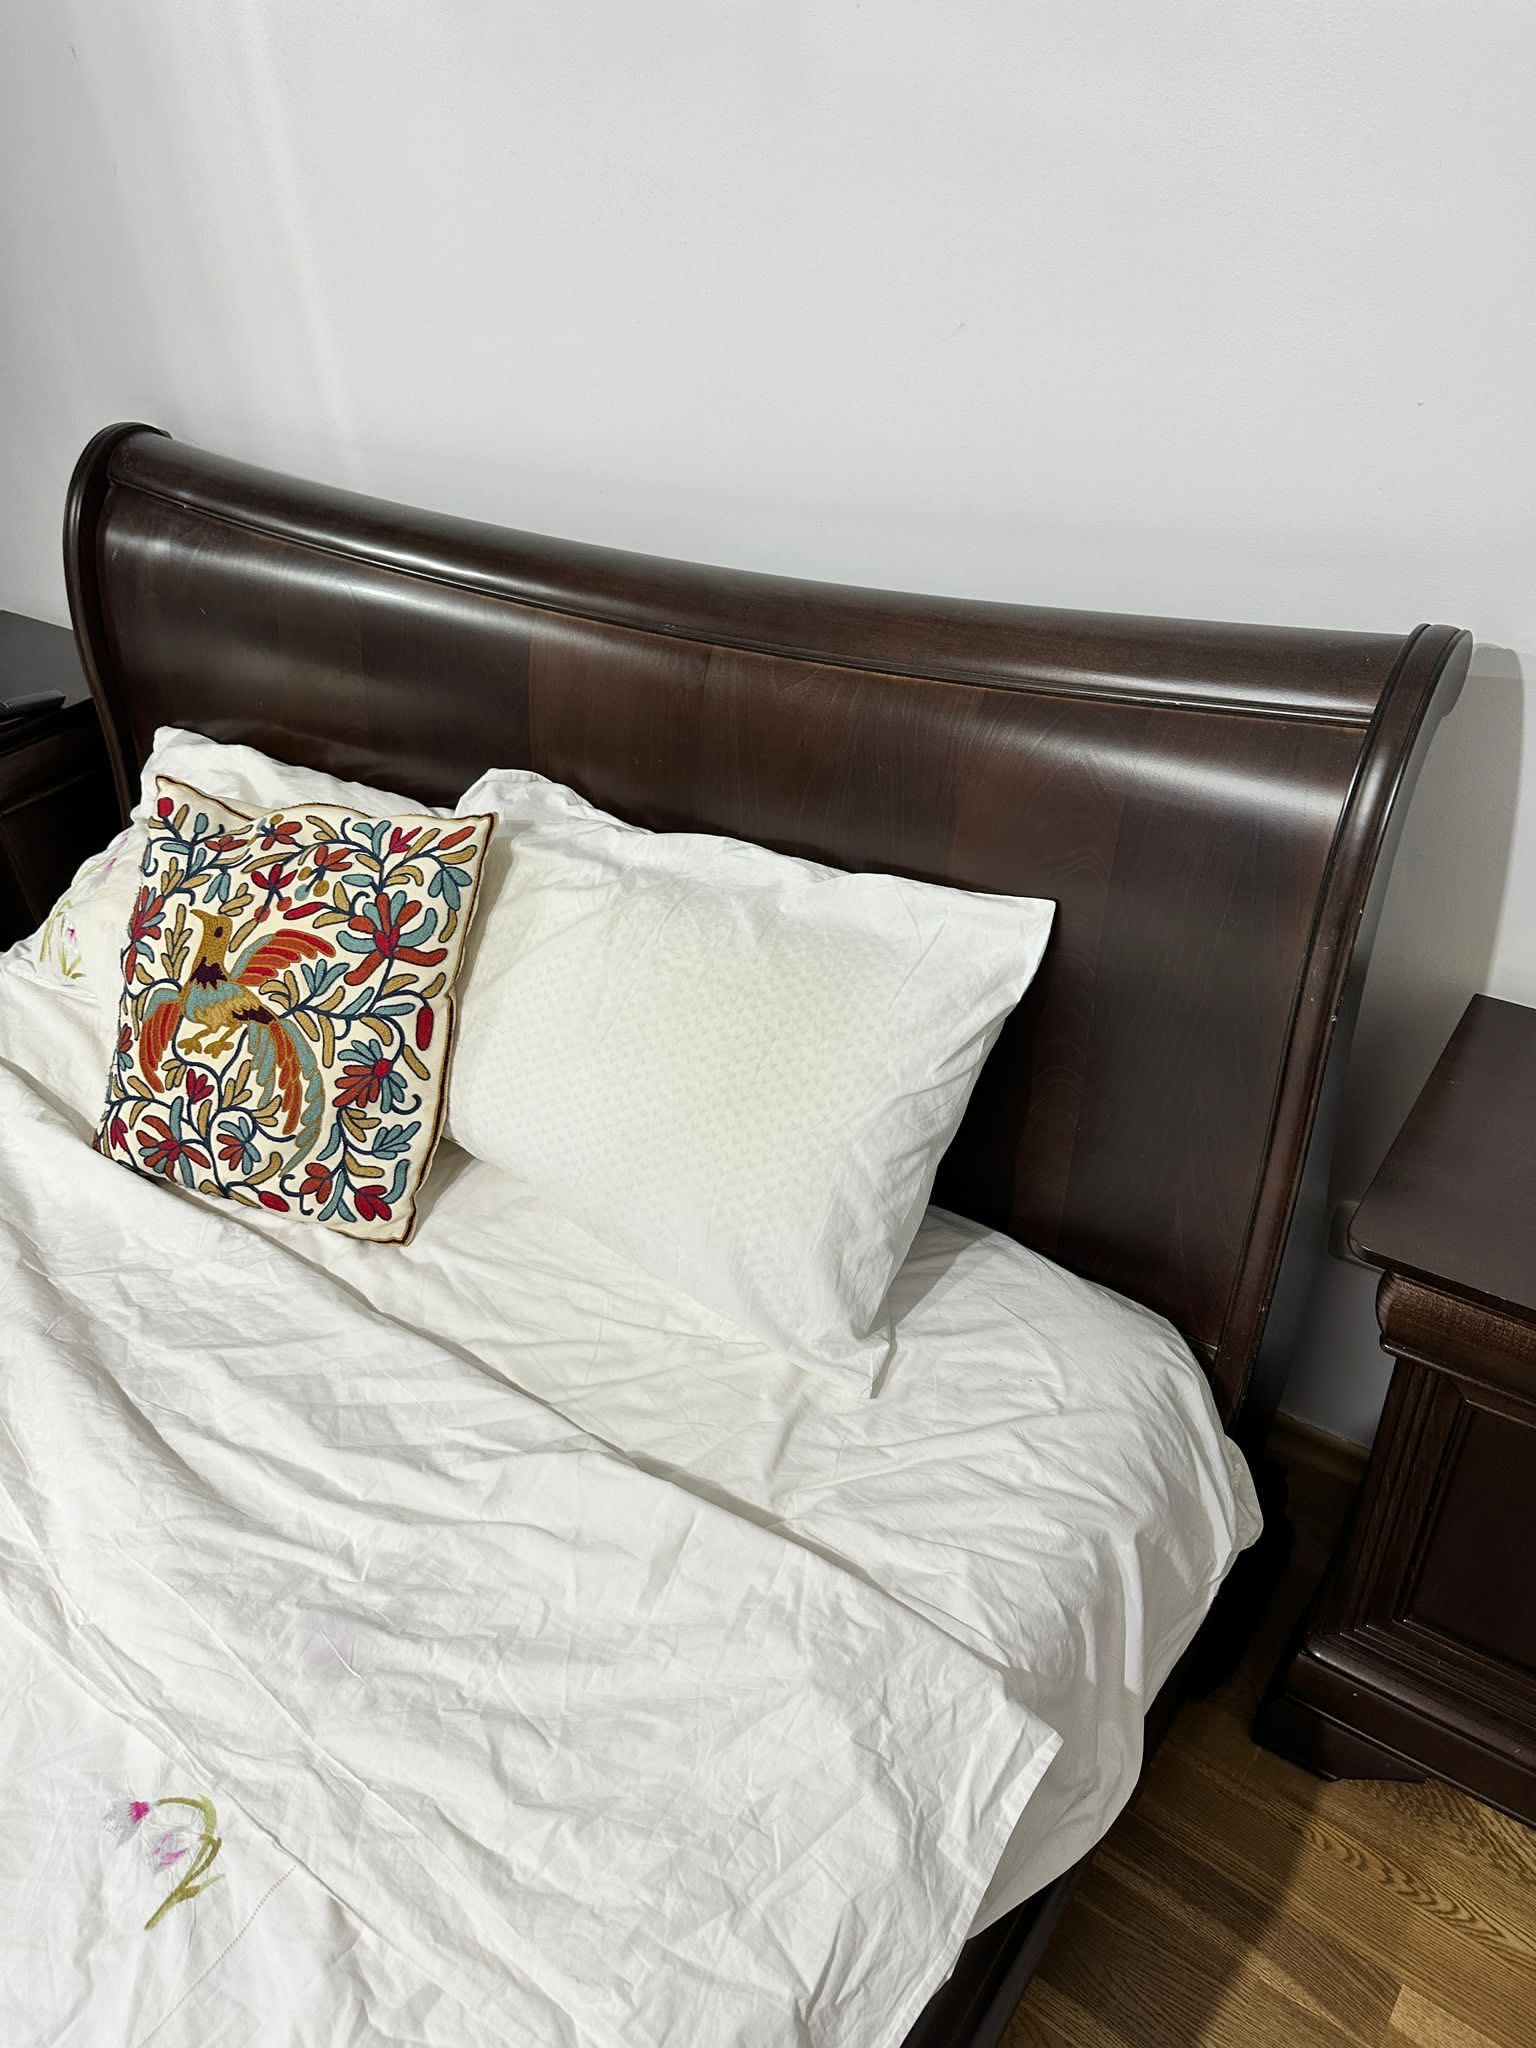 De vânzare pat CHOCOLATE de la Mobexpert - 160x200 cu somieră inclusă